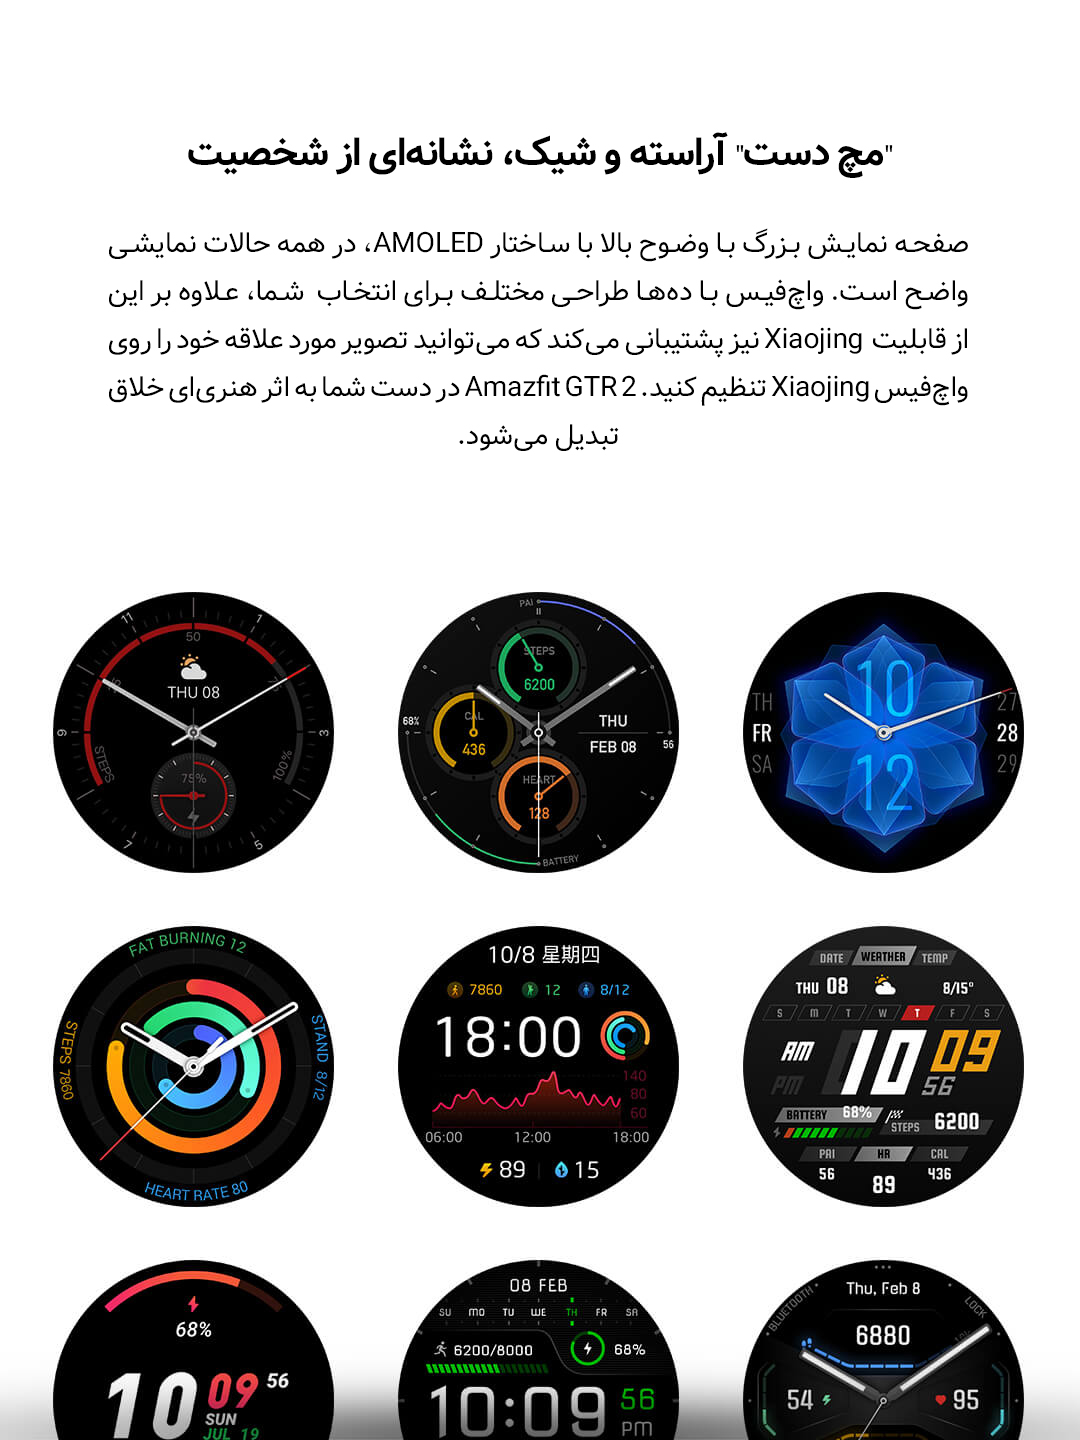 ساعت هوشمند Amazfit GTR 2